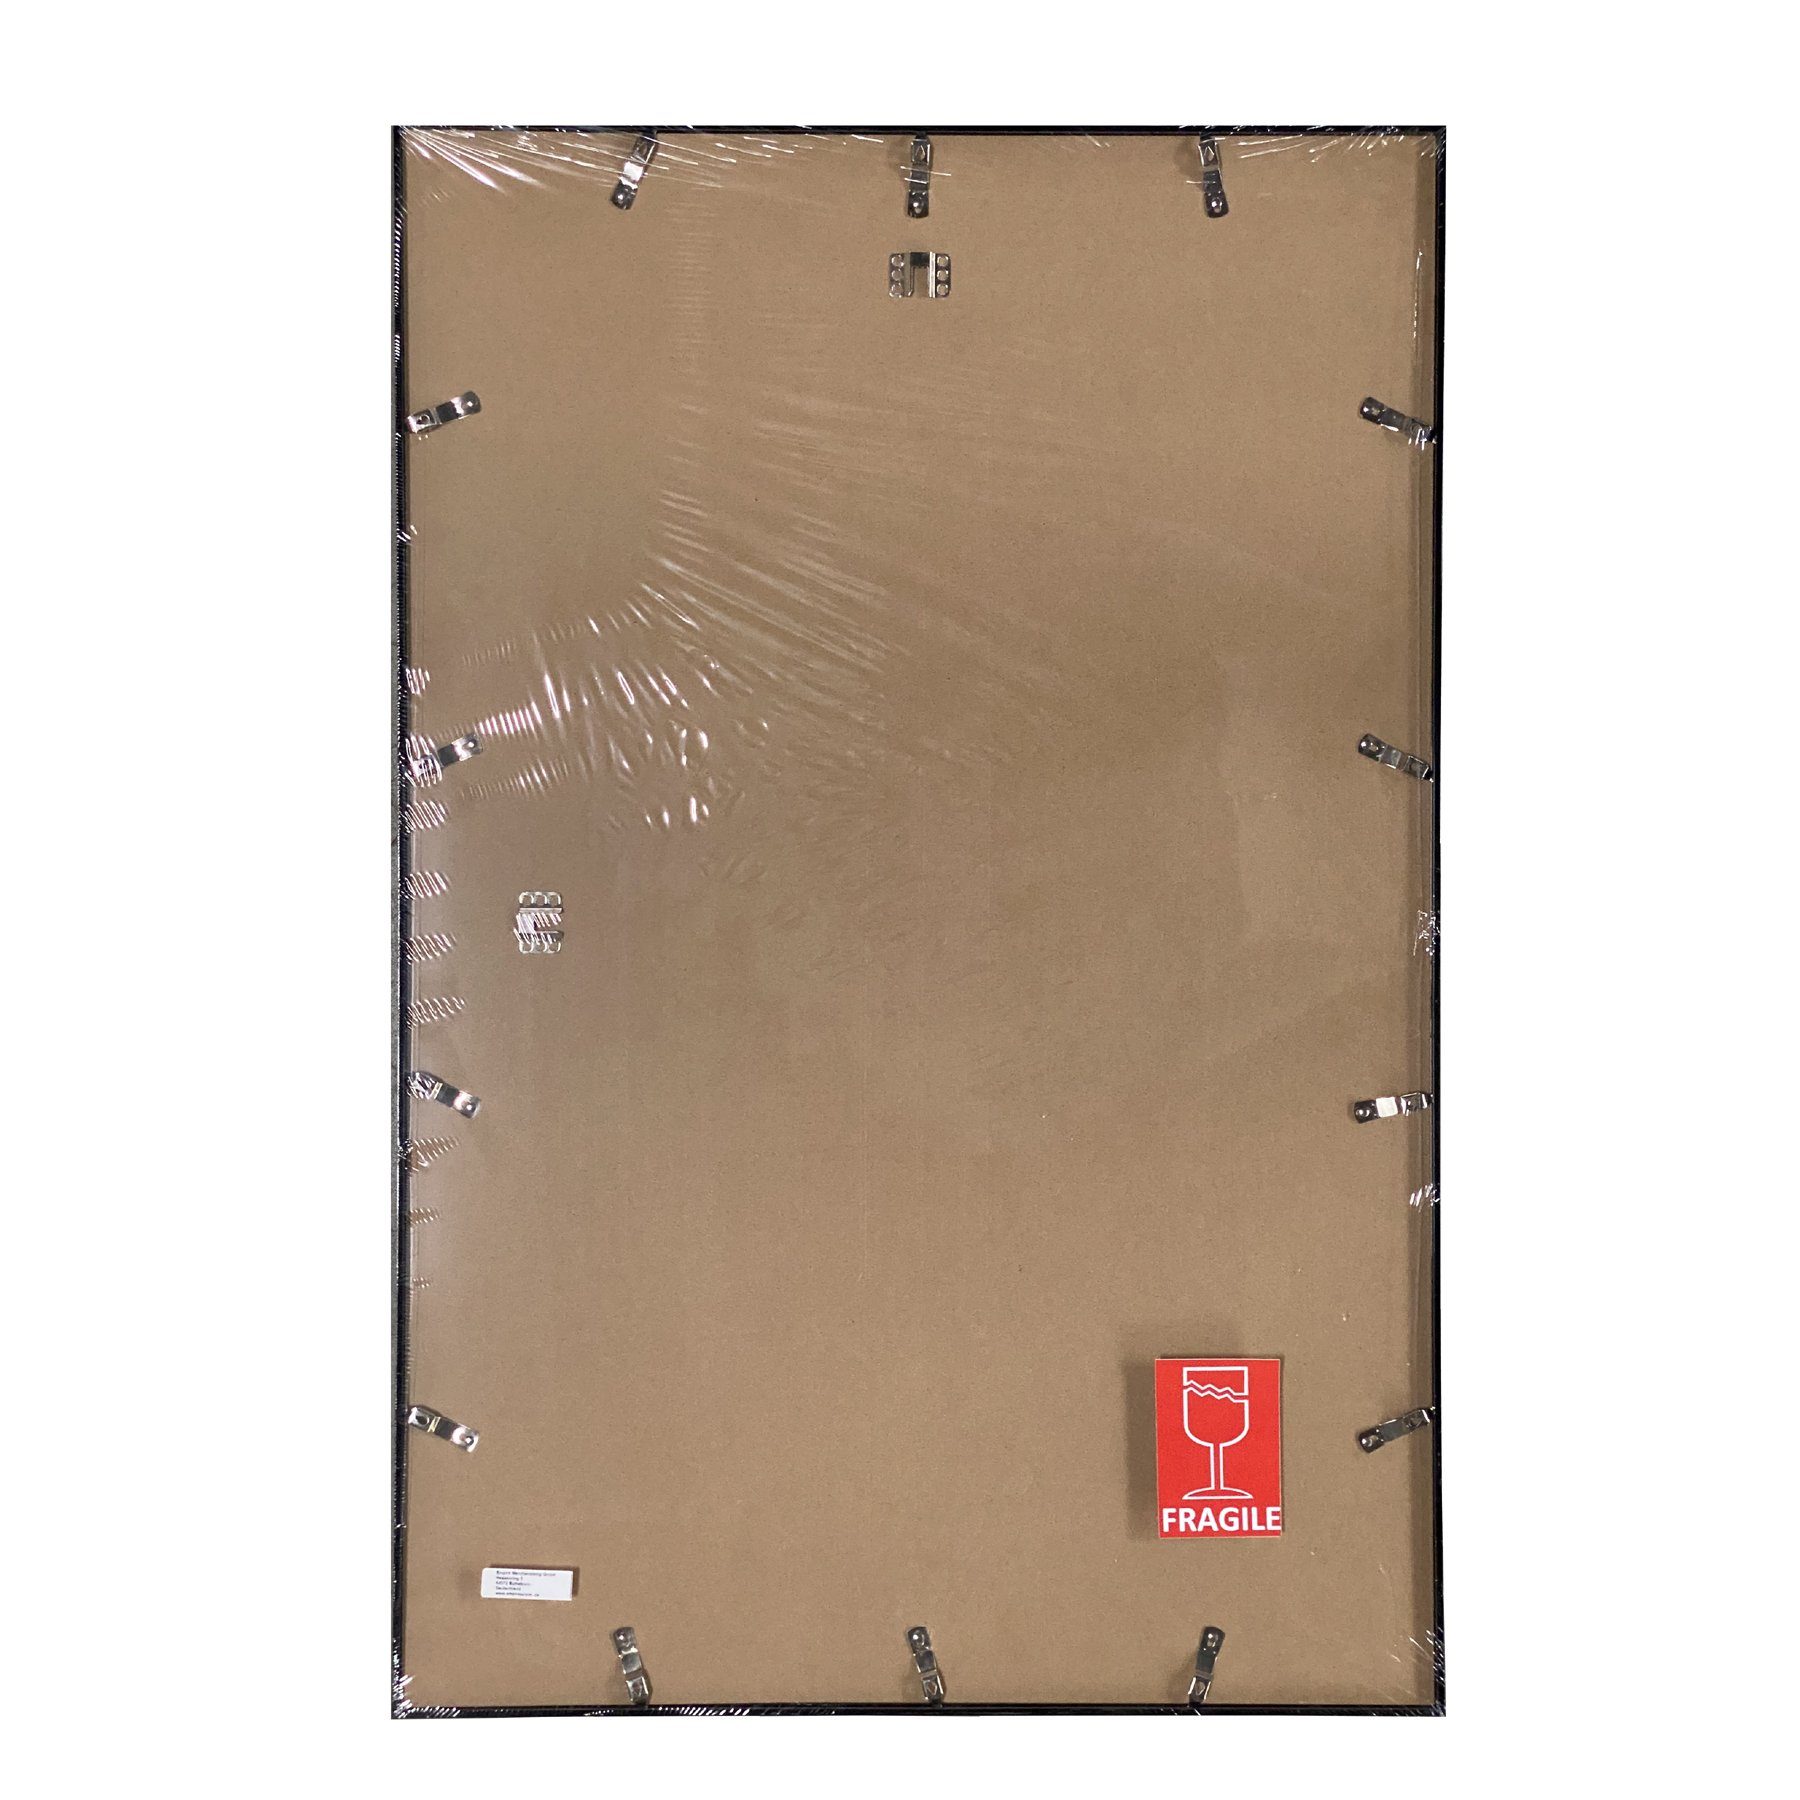 Profil: Wechselrahmen 15mm Acryl-Scheibe 61x91,5cm, empireposter Farbe Shinsuke® Kunststoff Rahmen Maxi-Poster türkis mit Posterrahmen